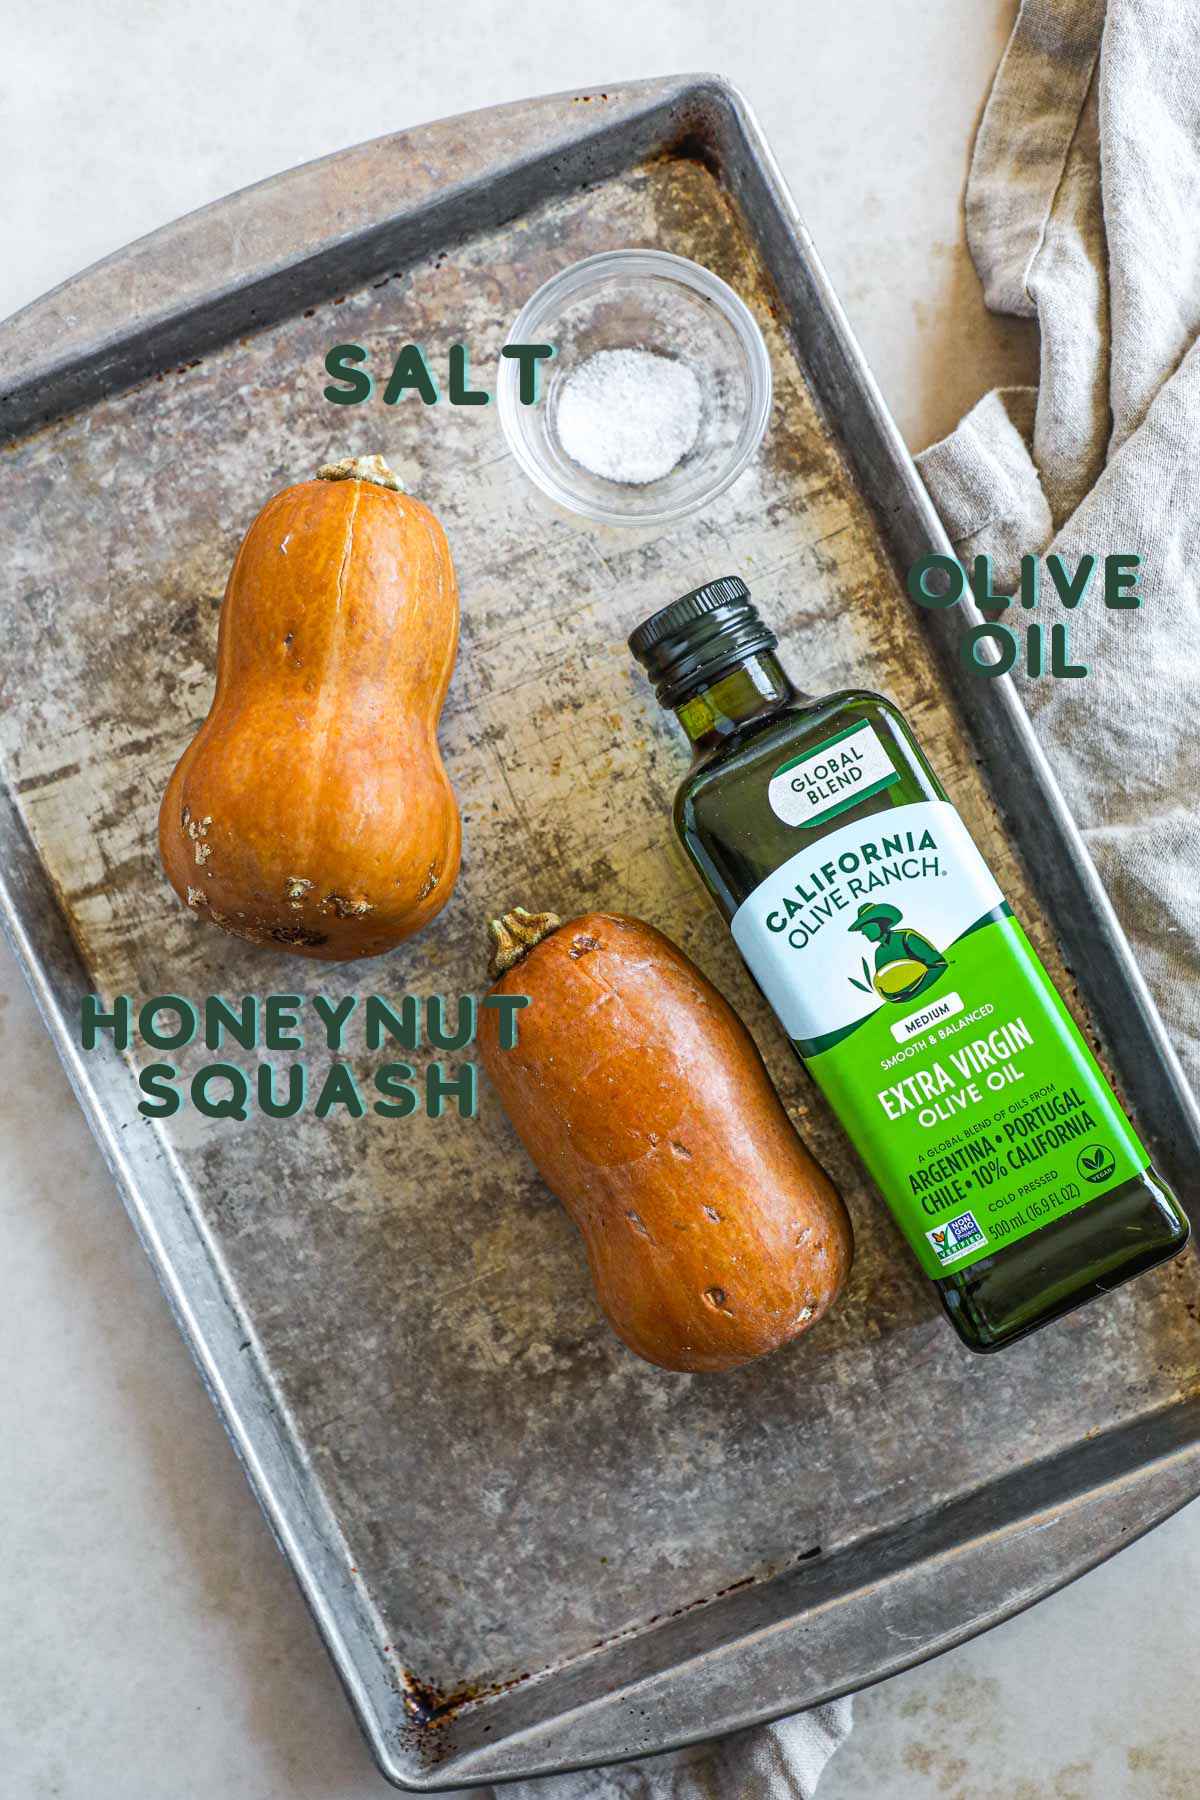 Ingredients to make honeynut squash, including honeynut squash, olive oil, and salt.